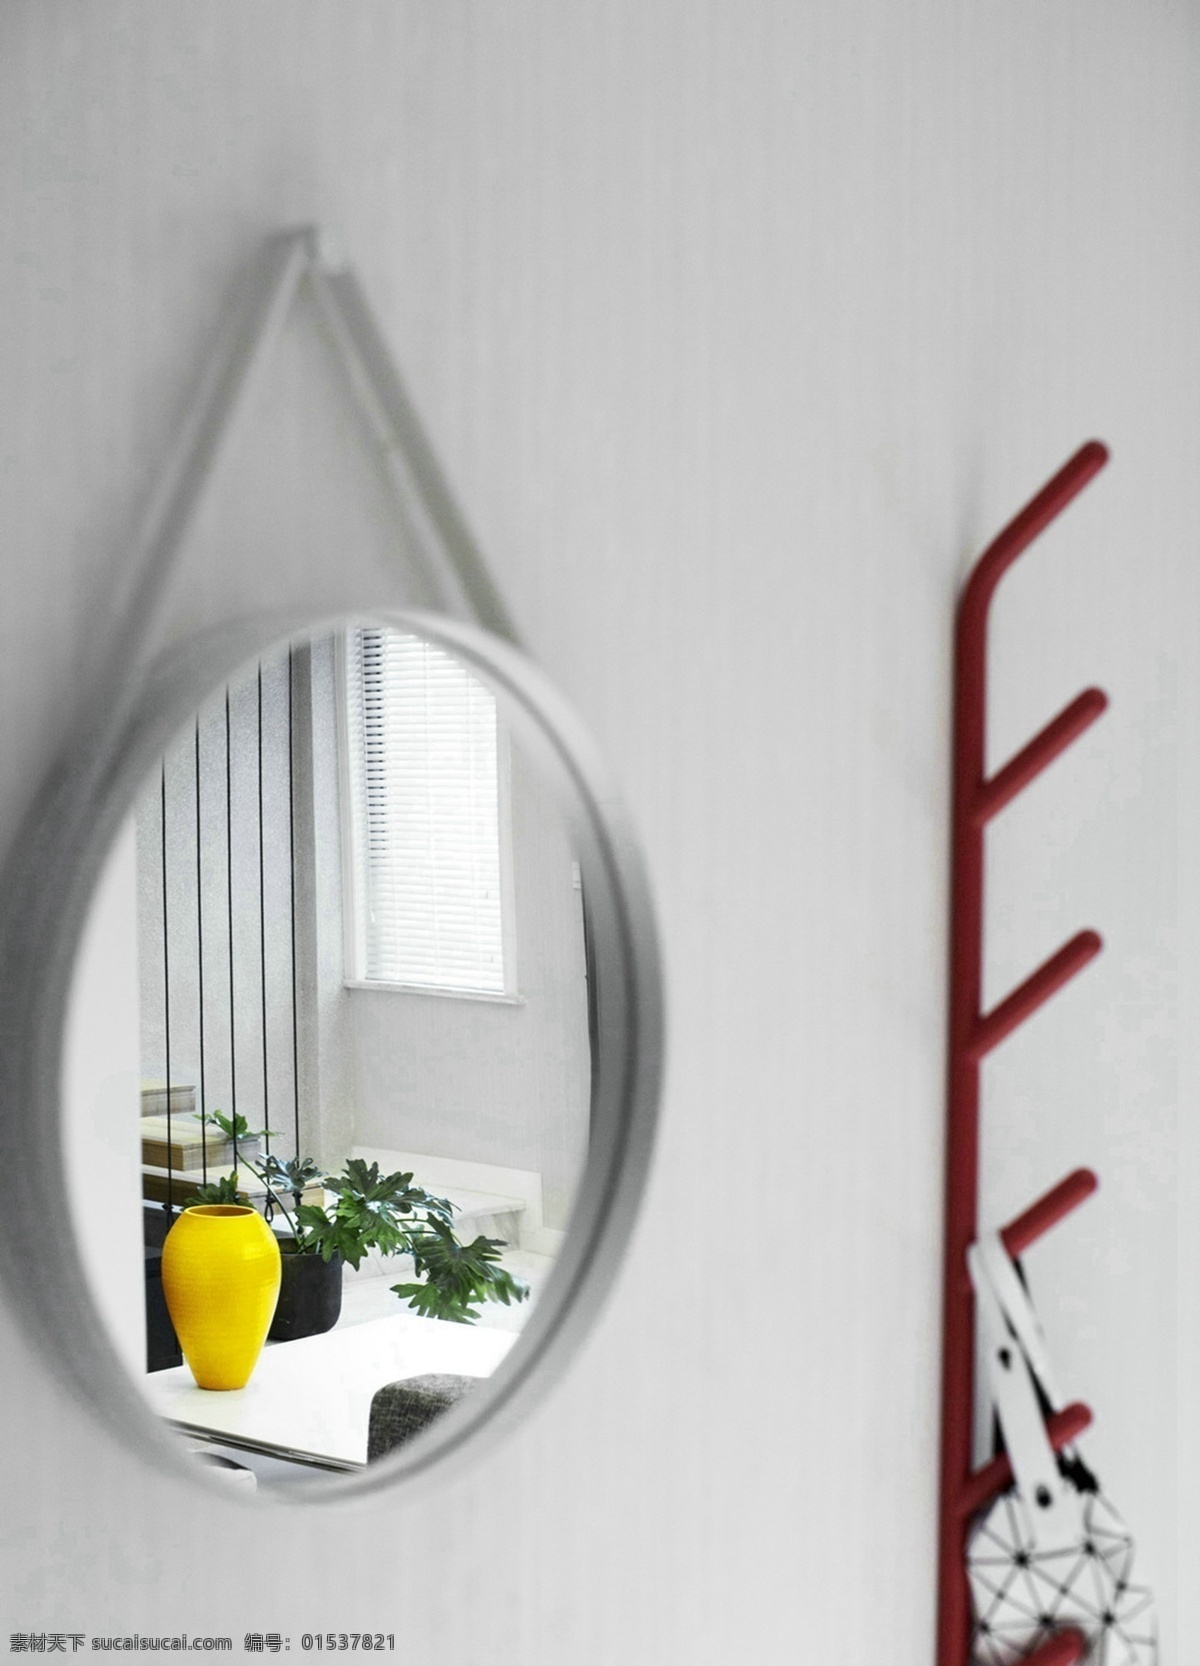 现代 时尚 客厅 白色 背景 墙 室内装修 效果图 红色衣架 客厅装修 浅色背景墙 圆形镜子